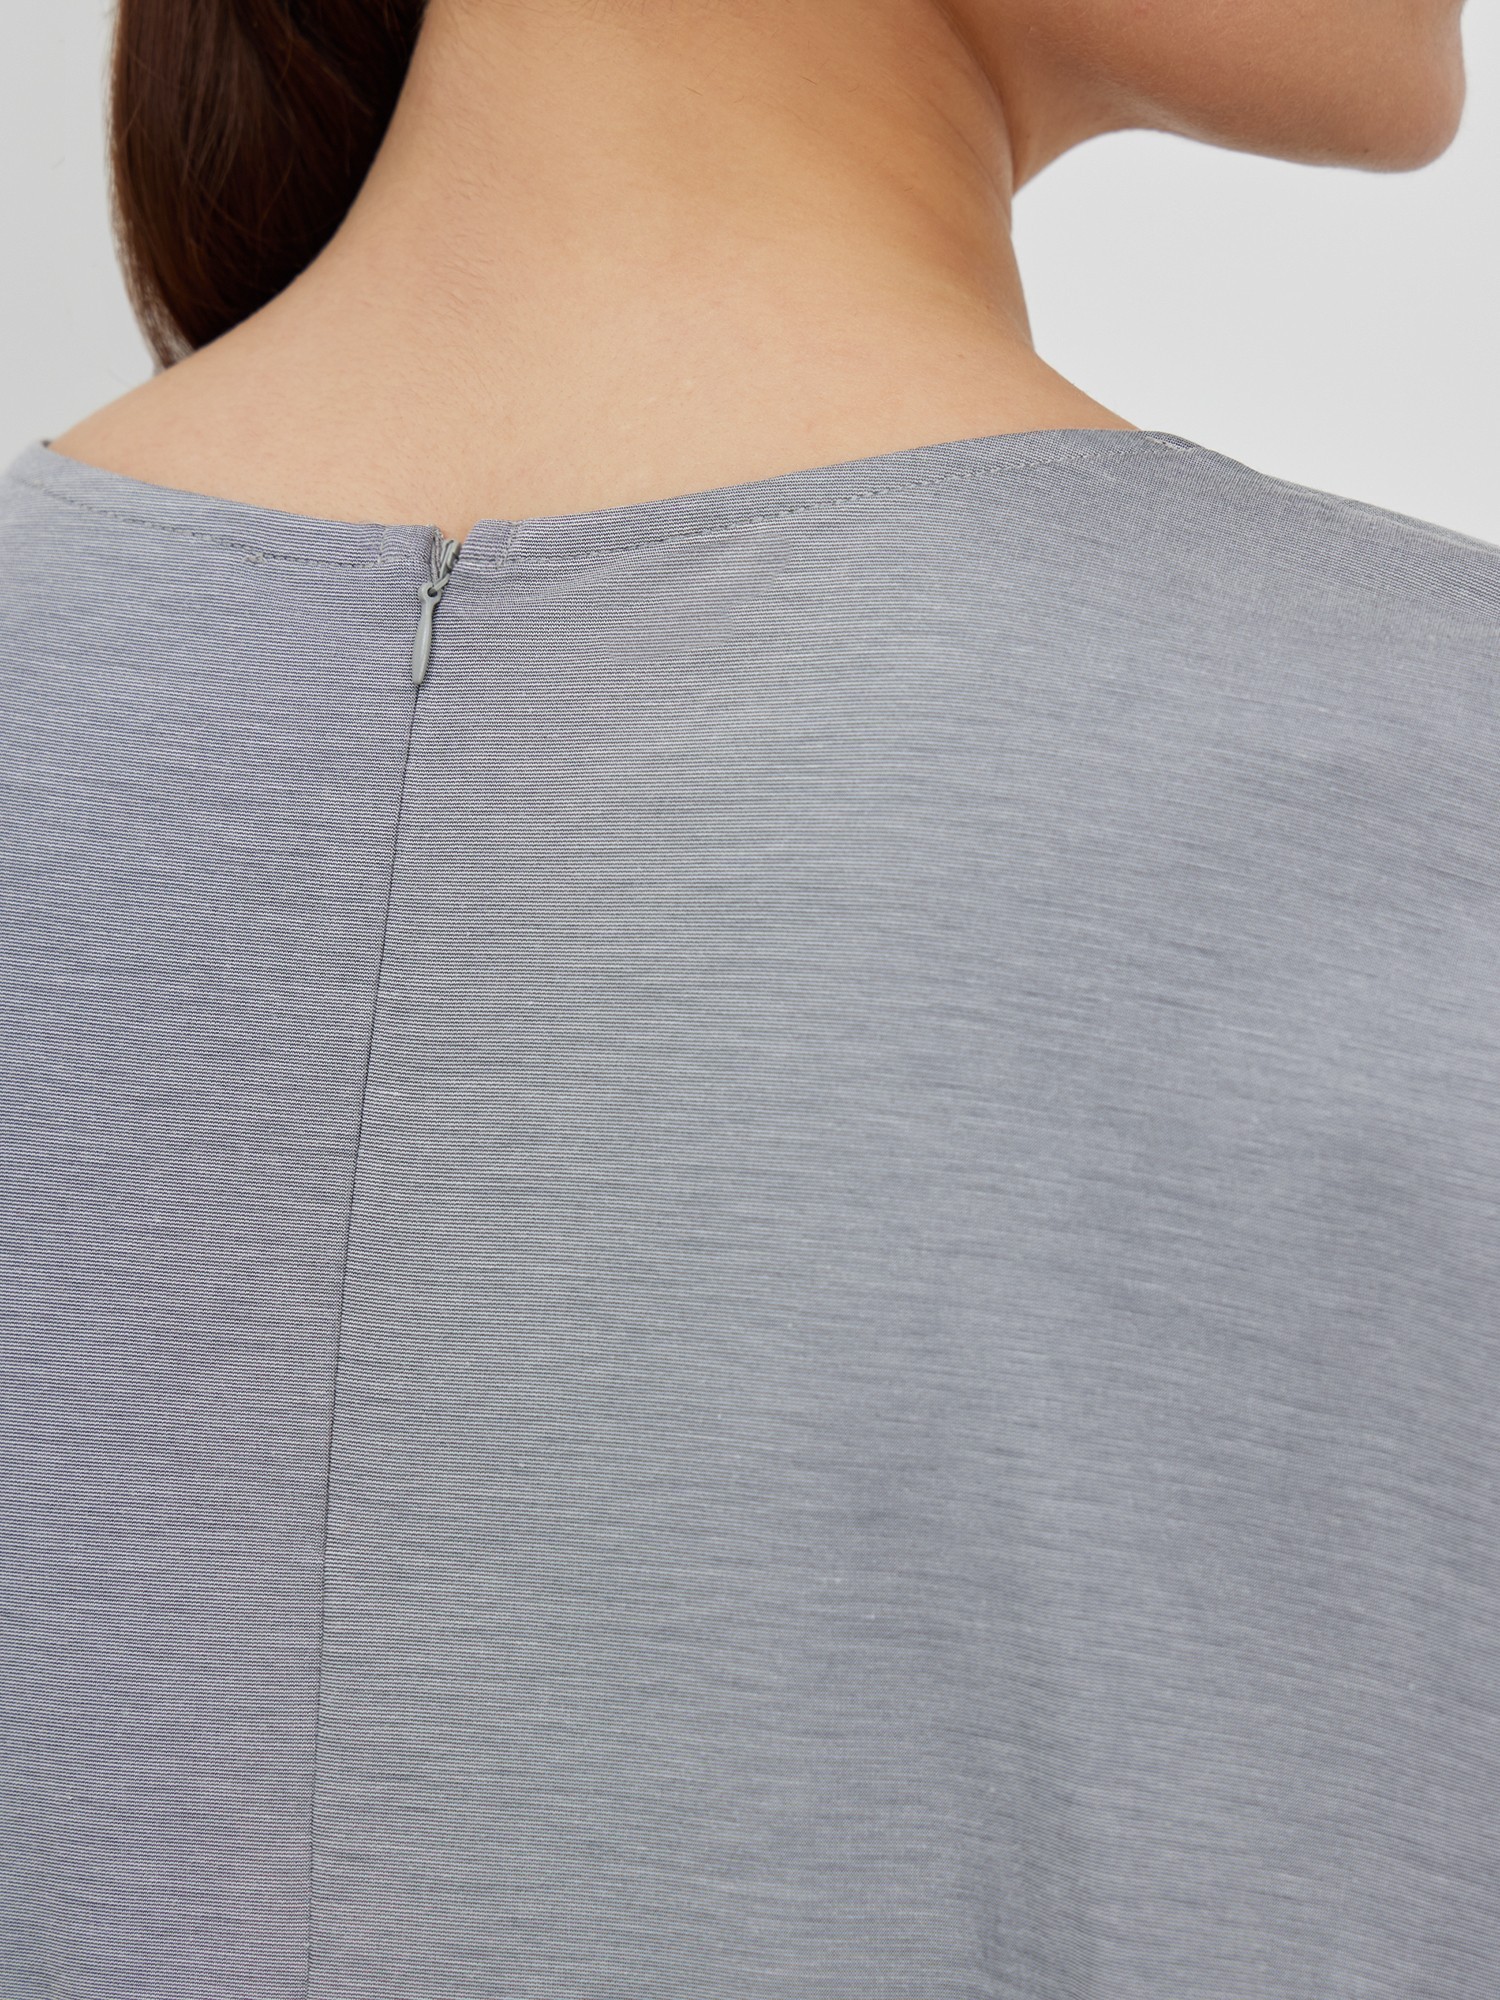 Блуза трикотажная с декором Lalis BL0691K, цвет серый меланж, размер 48 - фото 5